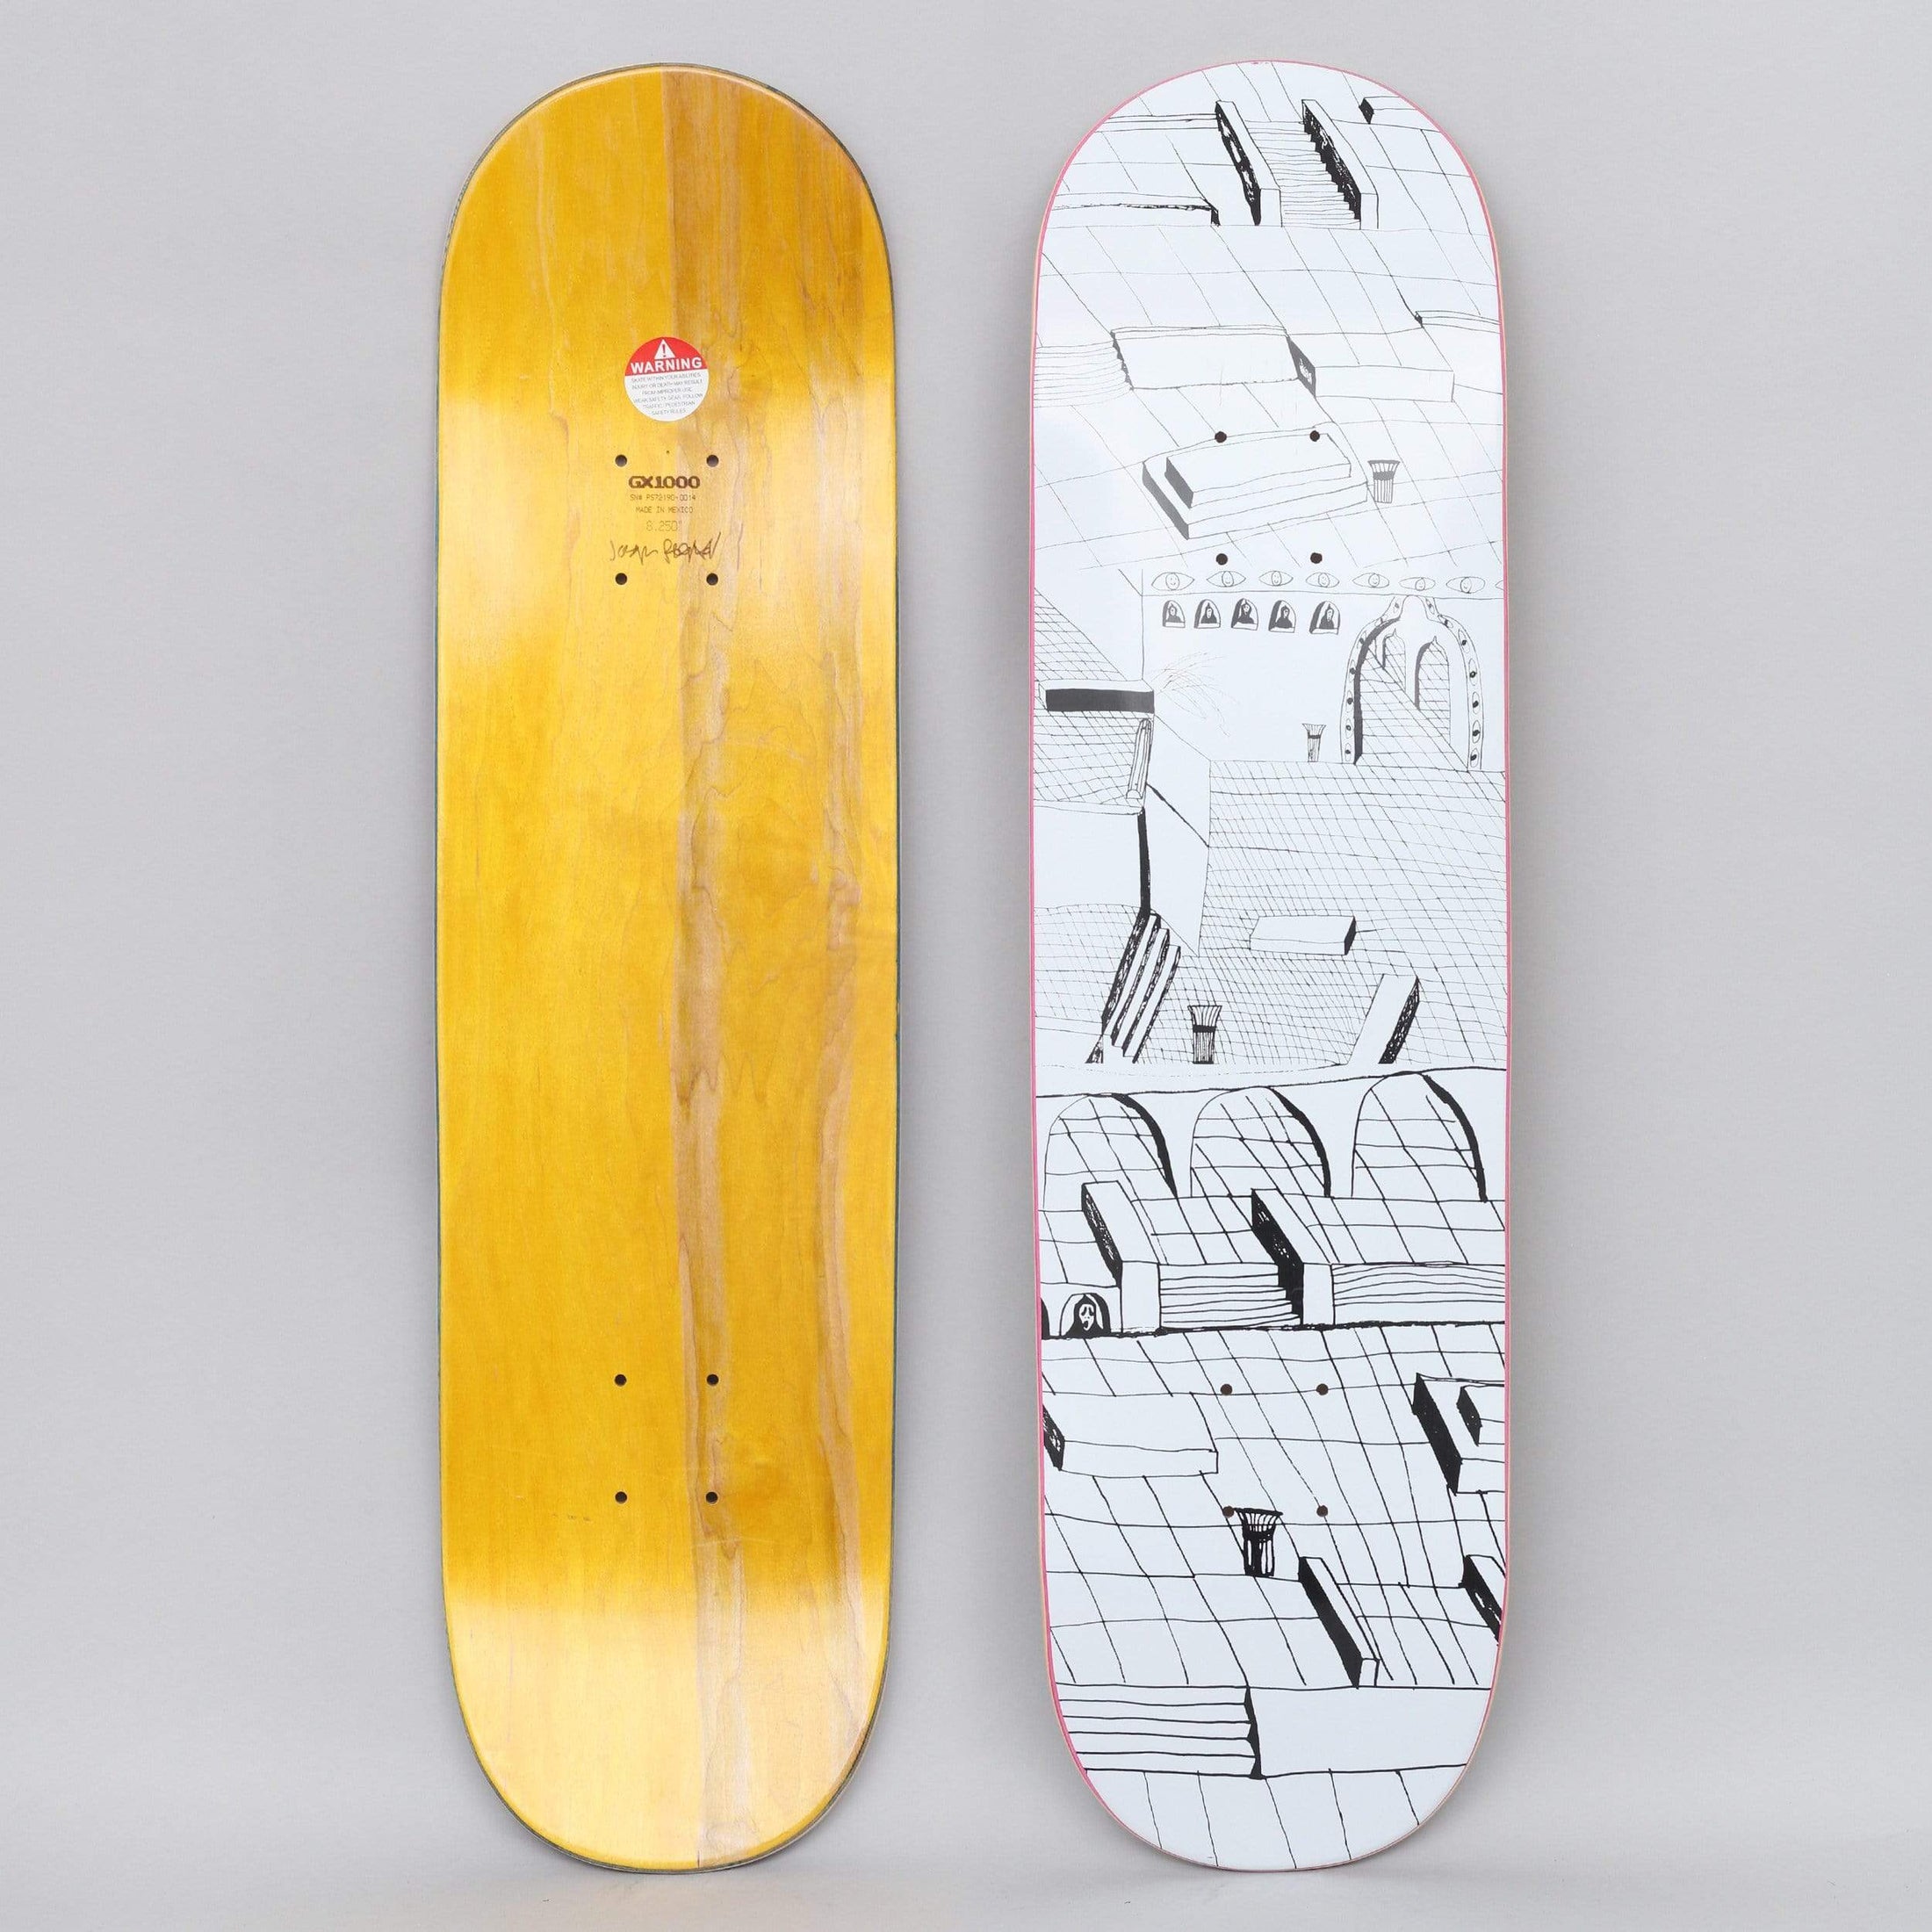 GX1000 8.25 Joe Sticker Skateboard Deck White